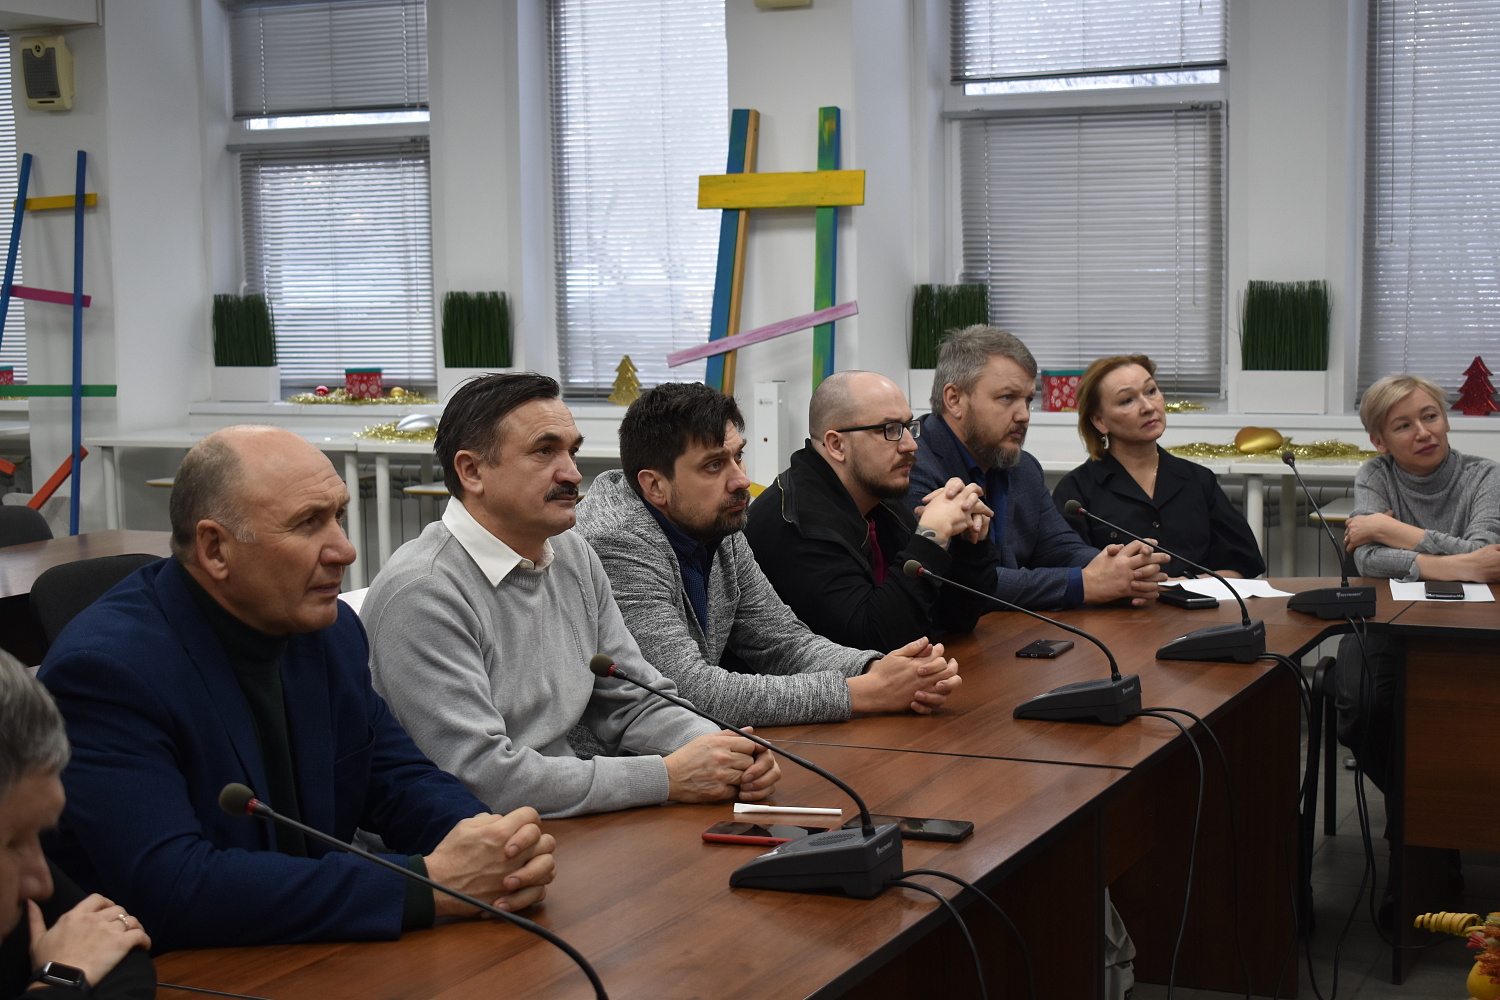 1 декабря 2022 г. в ТПП Чувашской Республики состоялся Круглый стол: «Поддержка семейного предпринимательства: проблемы, задачи, перспективы».